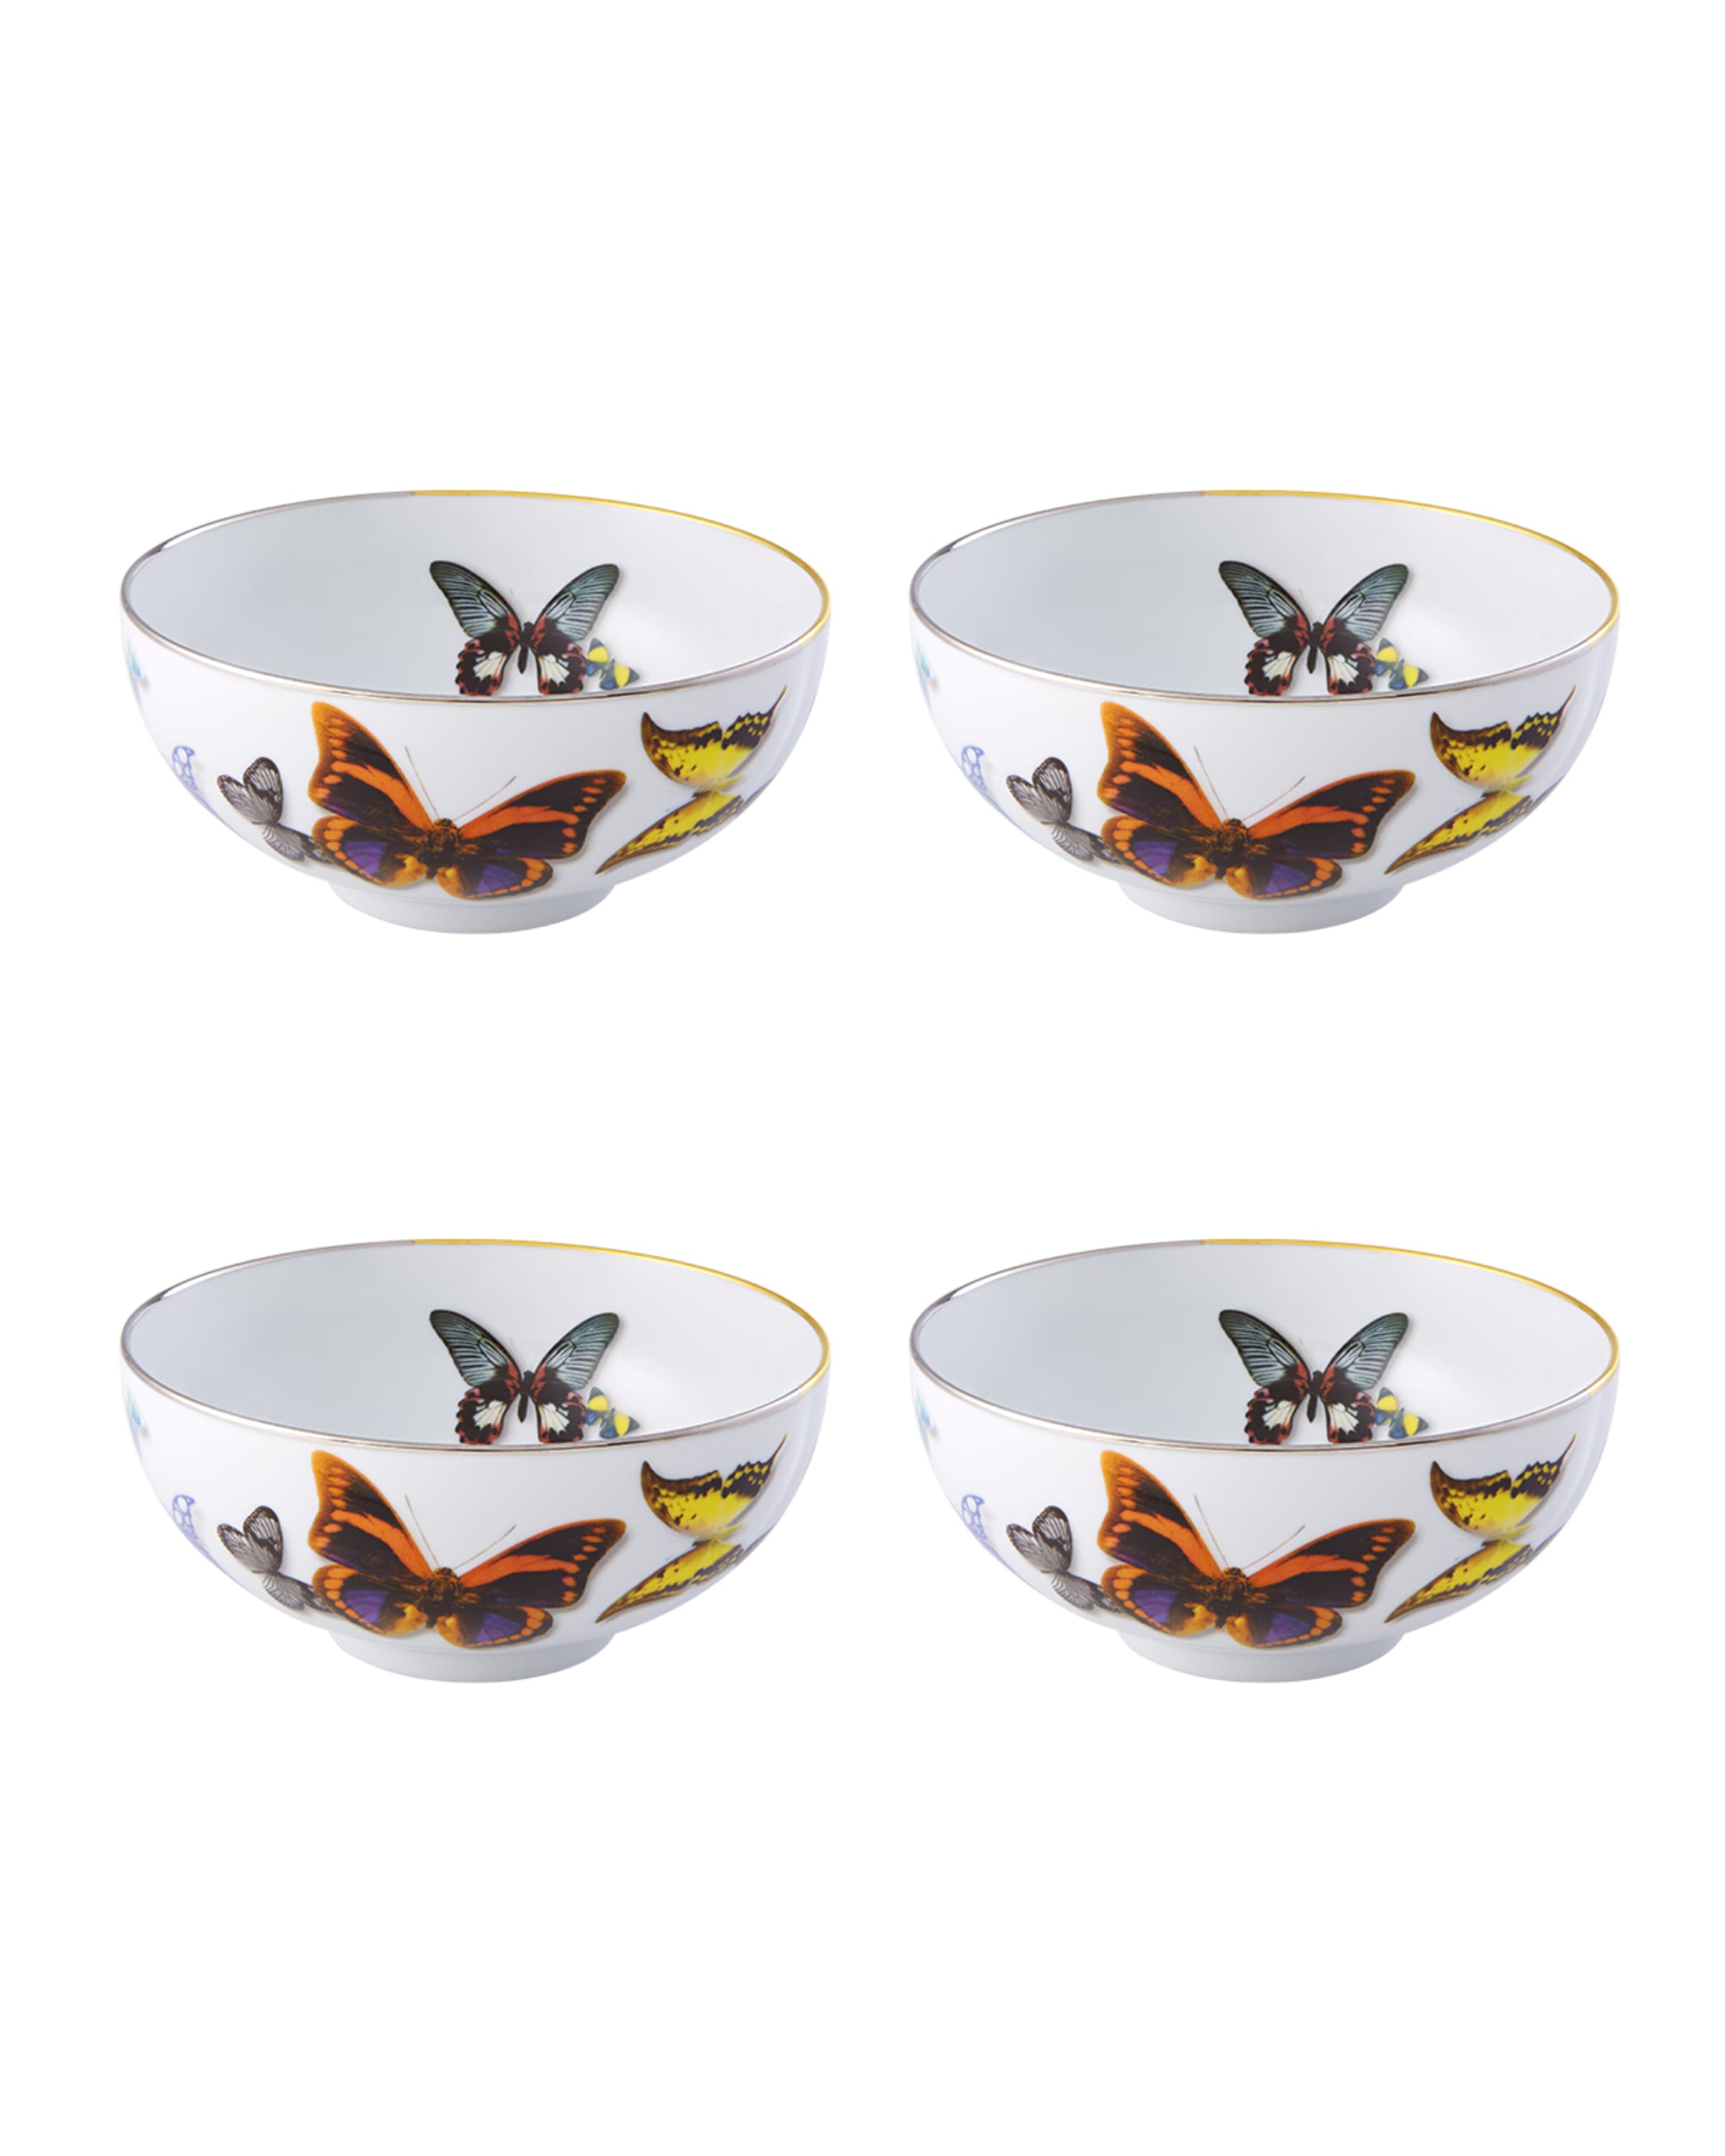 Christian LaCroix X Vista Alegre Butterfly Parade Soup Bowls, Set of 4